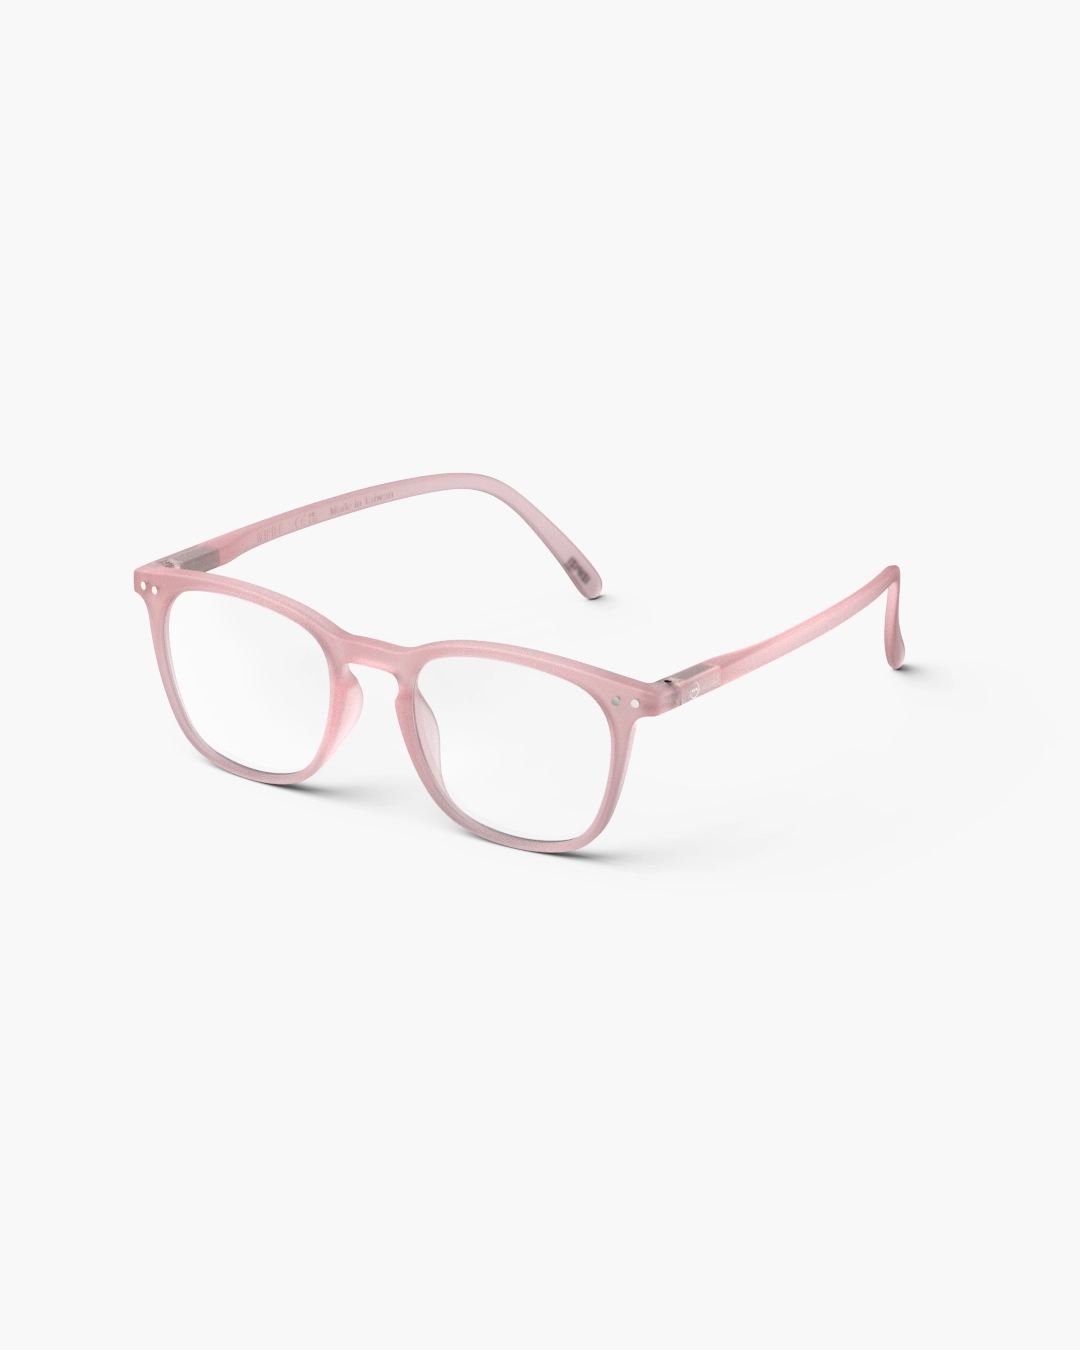 IZIPIZI #E Pink Reading Glasses